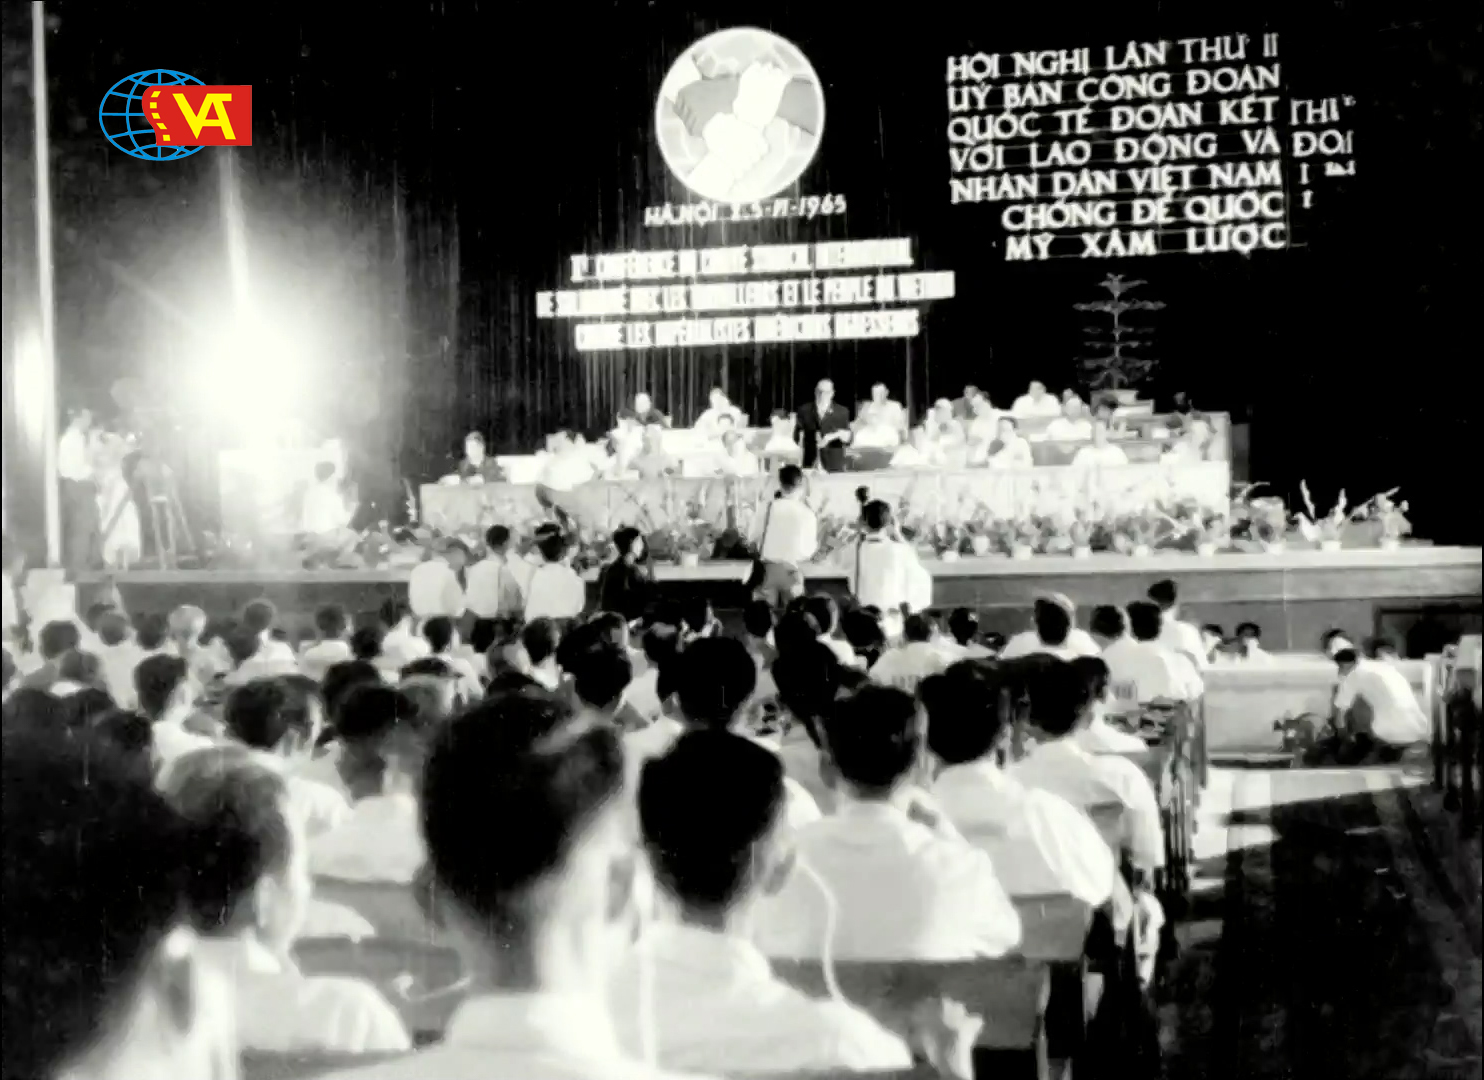 Chúc mừng kỷ niệm ngày Thành lập Công đoàn Việt Nam